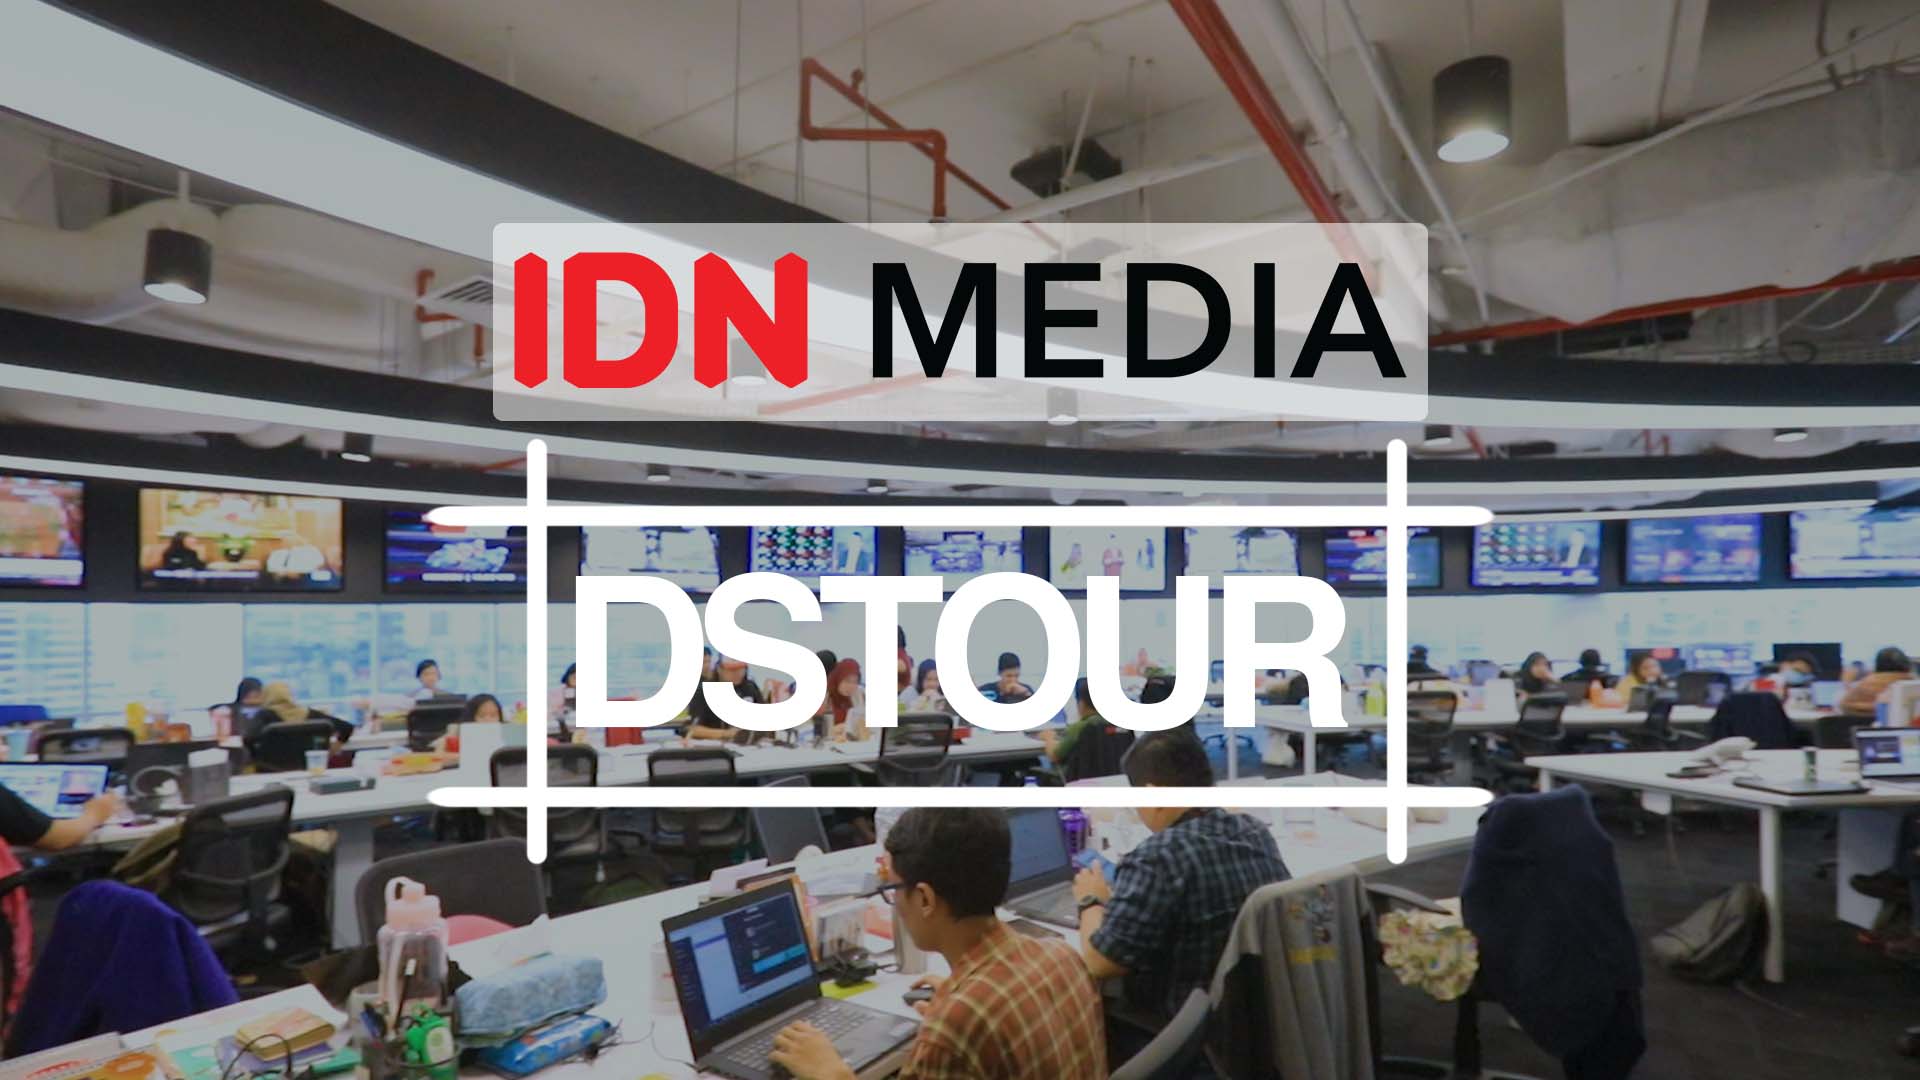 Kantor baru IDN Media, yang terletak di kawasan Gatot Soebroto, menerapkan konsep ruangan terbuka yang sarat nuansa khas Indonesia